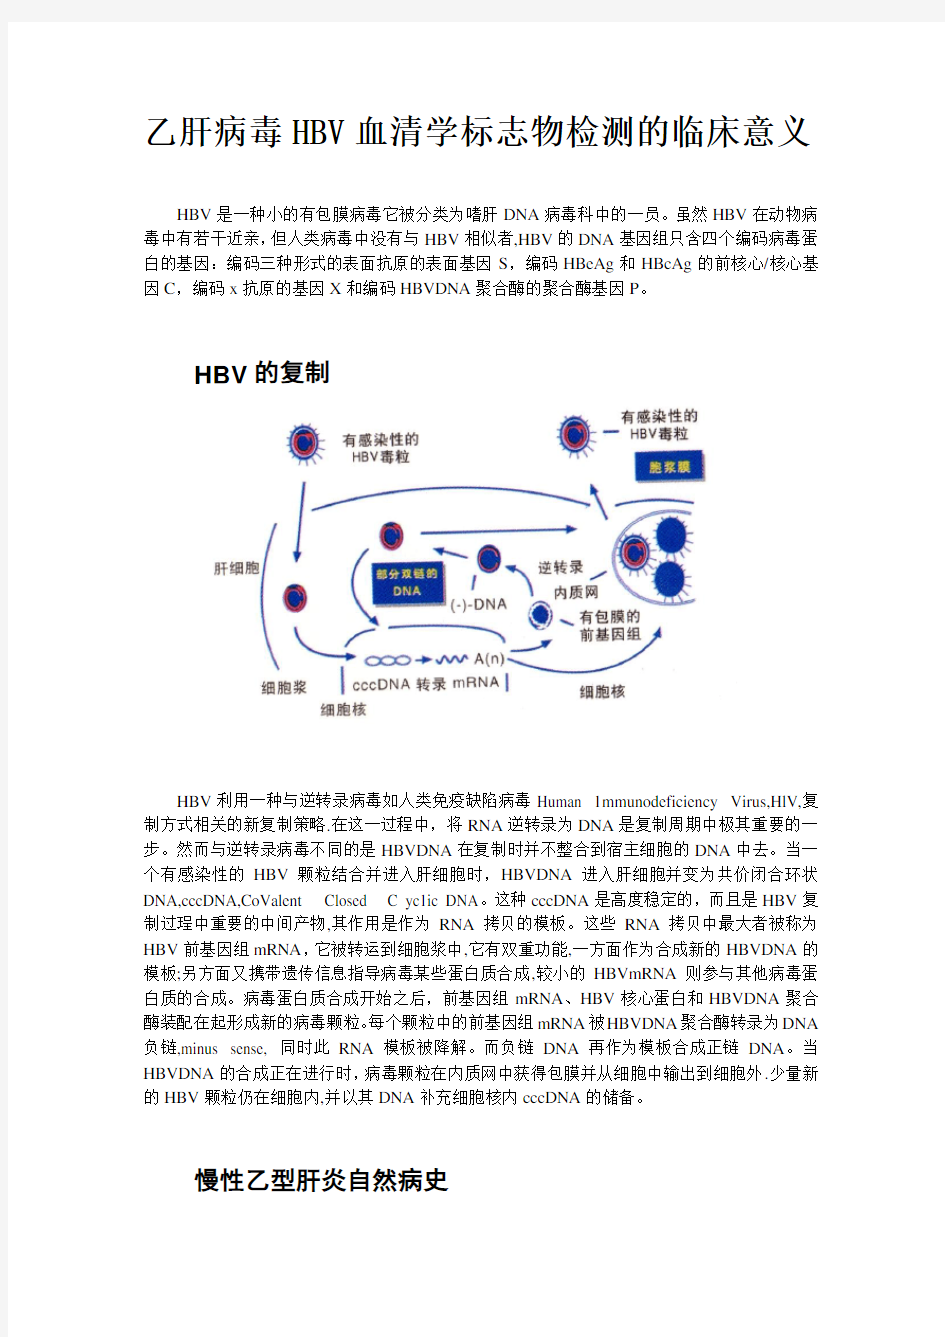 乙肝病毒HBV血清学标志物检测的临床意义